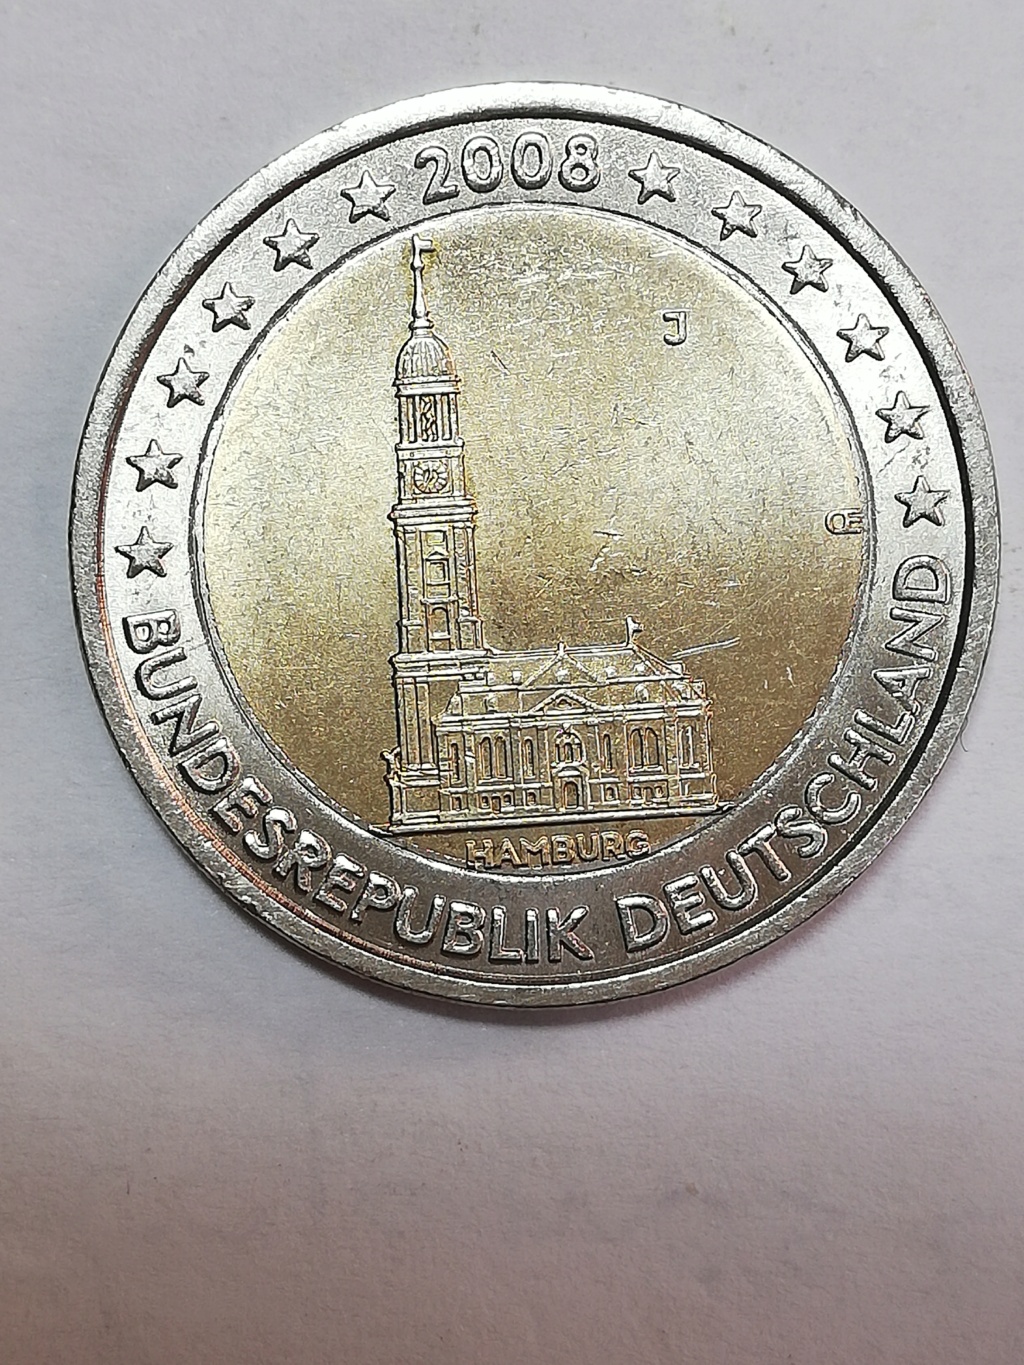 2 euros 2008, Alemania J. Img_2301